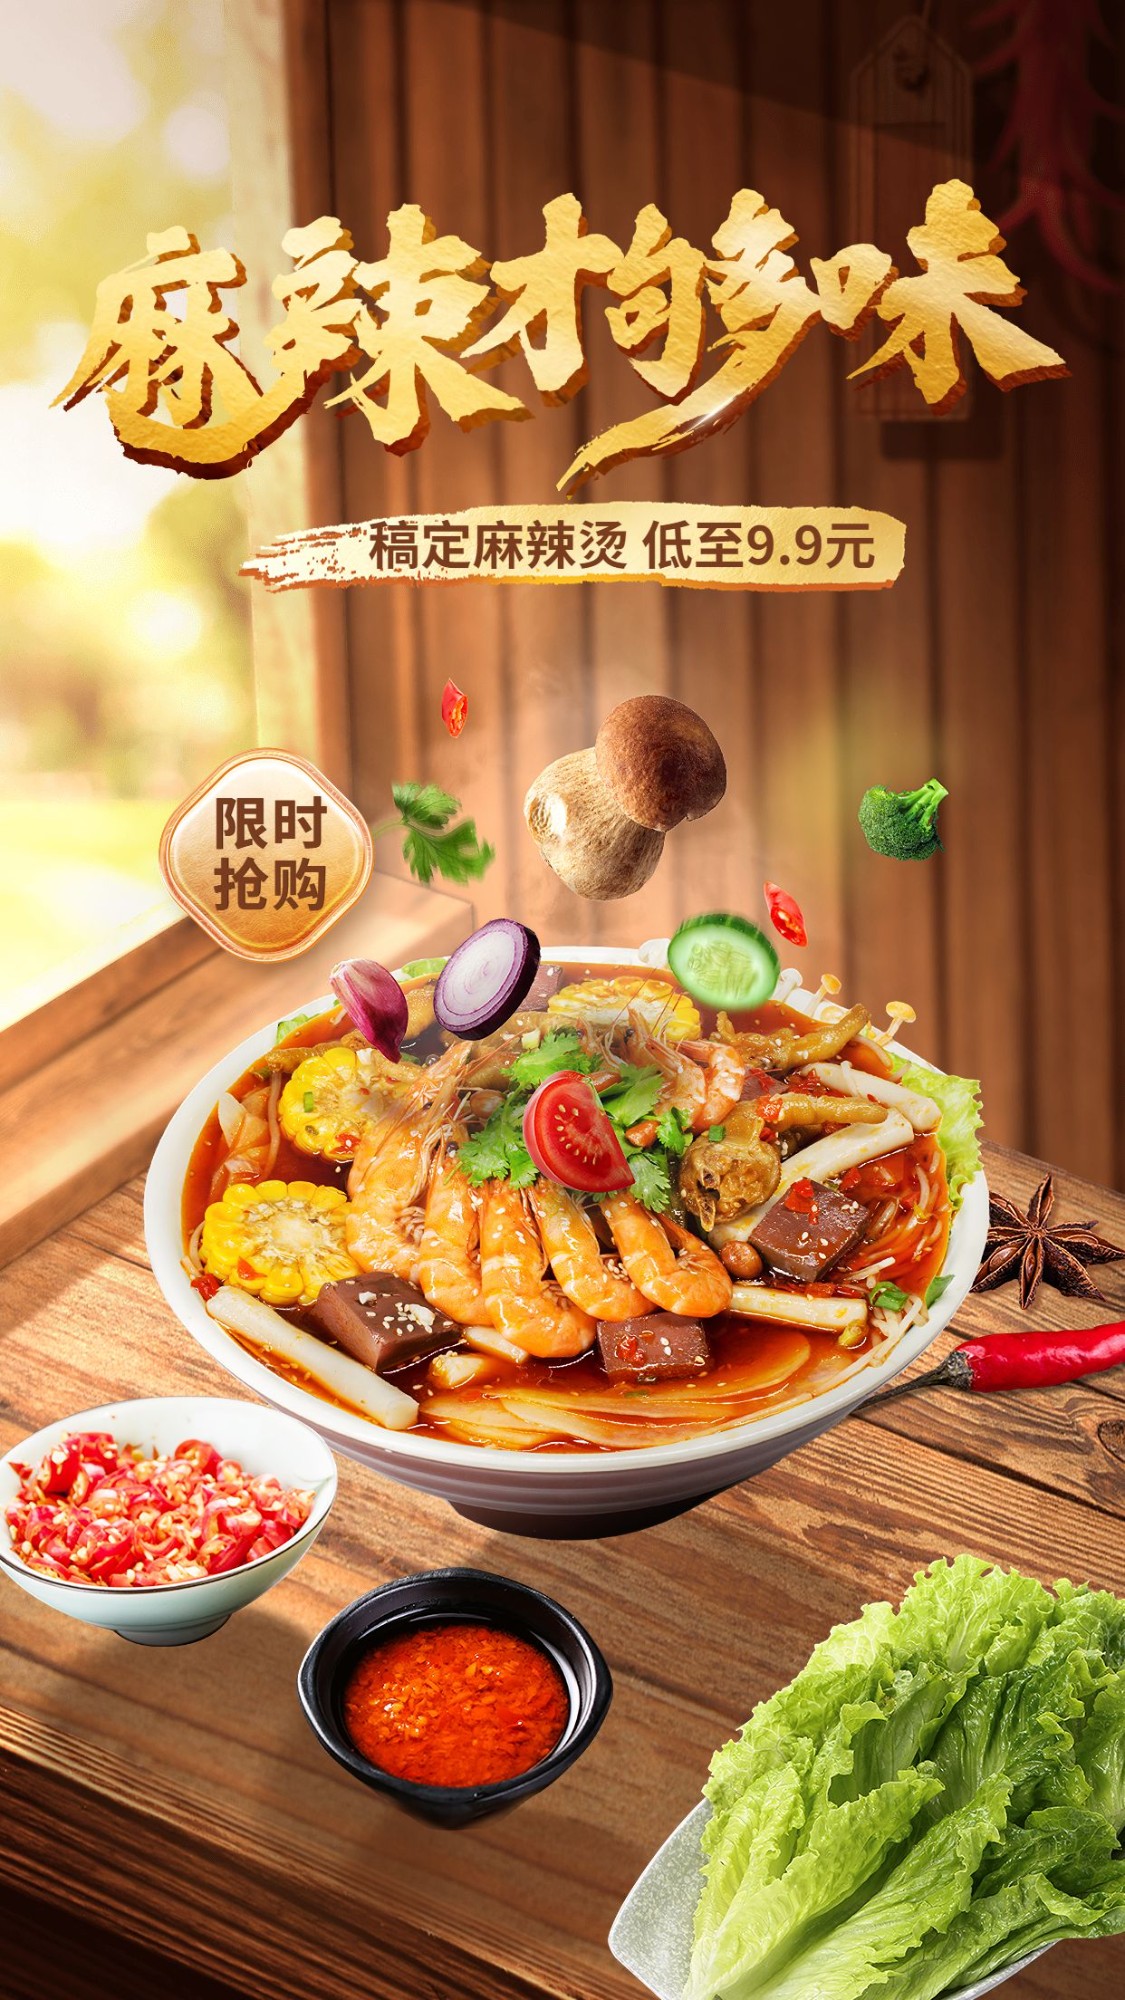 餐饮麻辣烫小吃实景合成产品营销手机海报